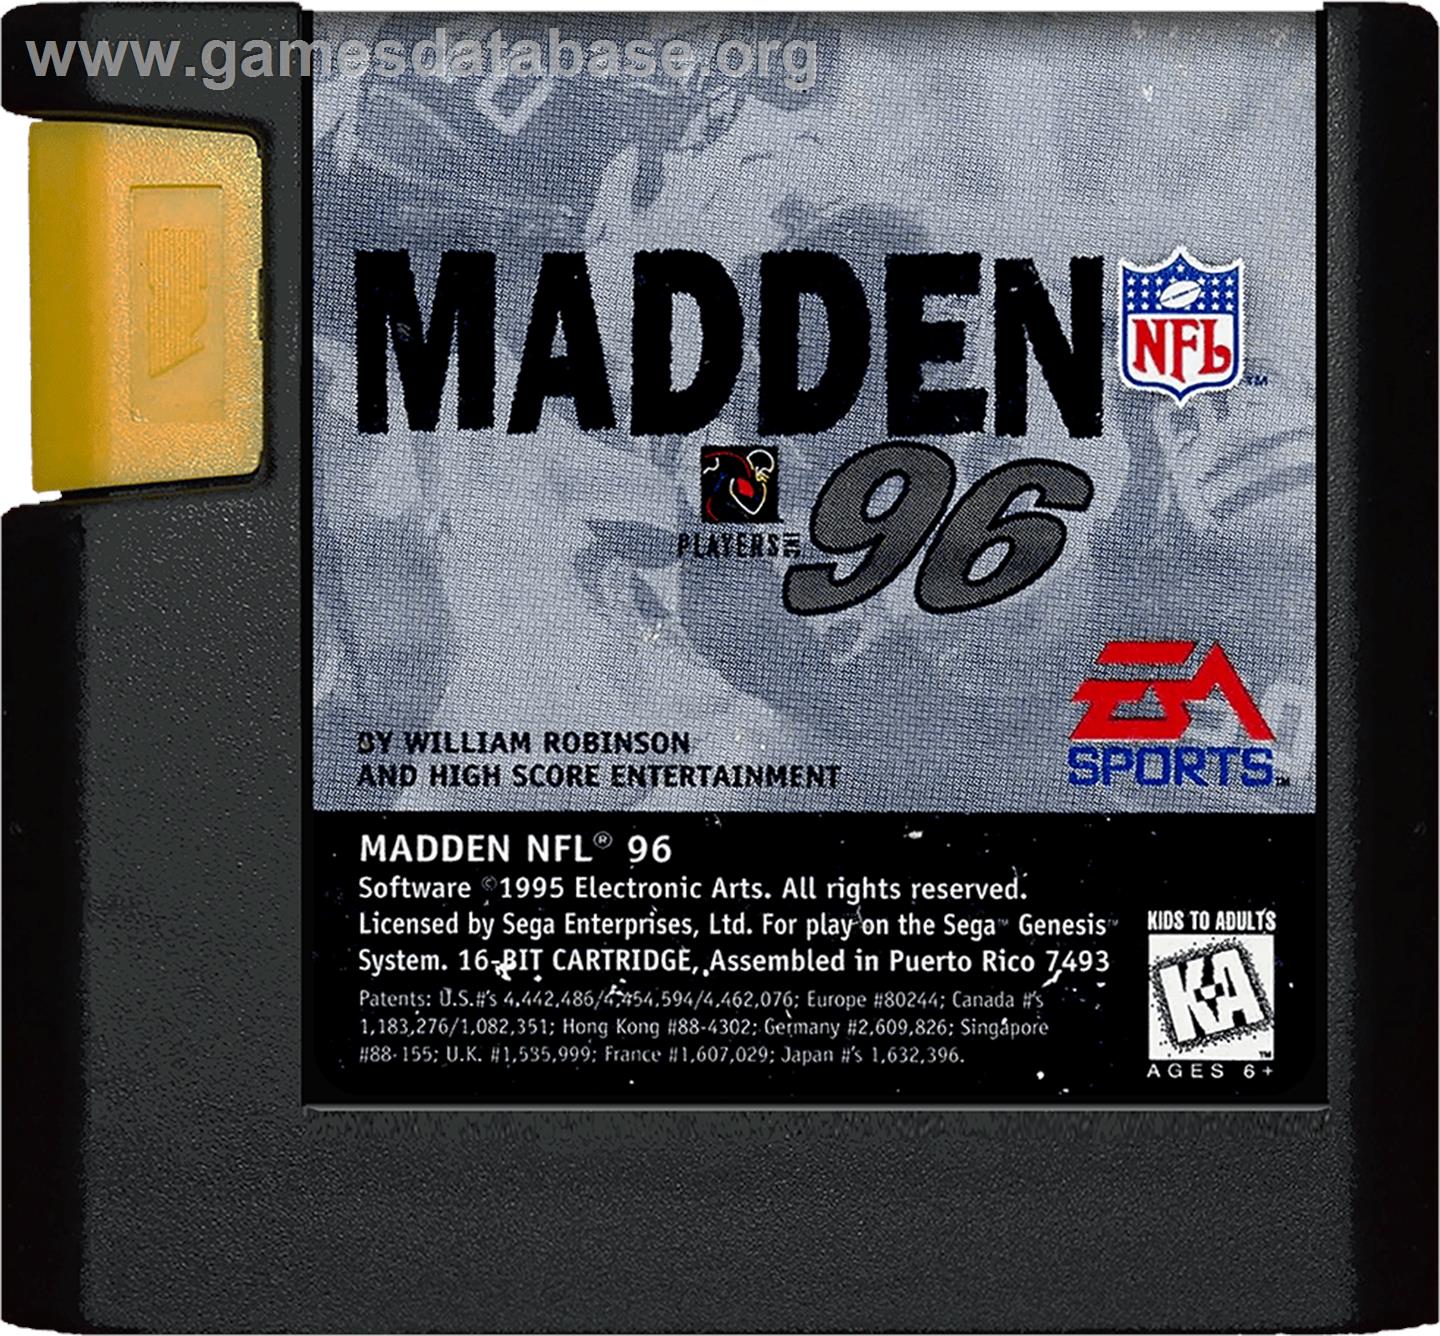 Madden NFL '96 - Sega Genesis - Artwork - Cartridge